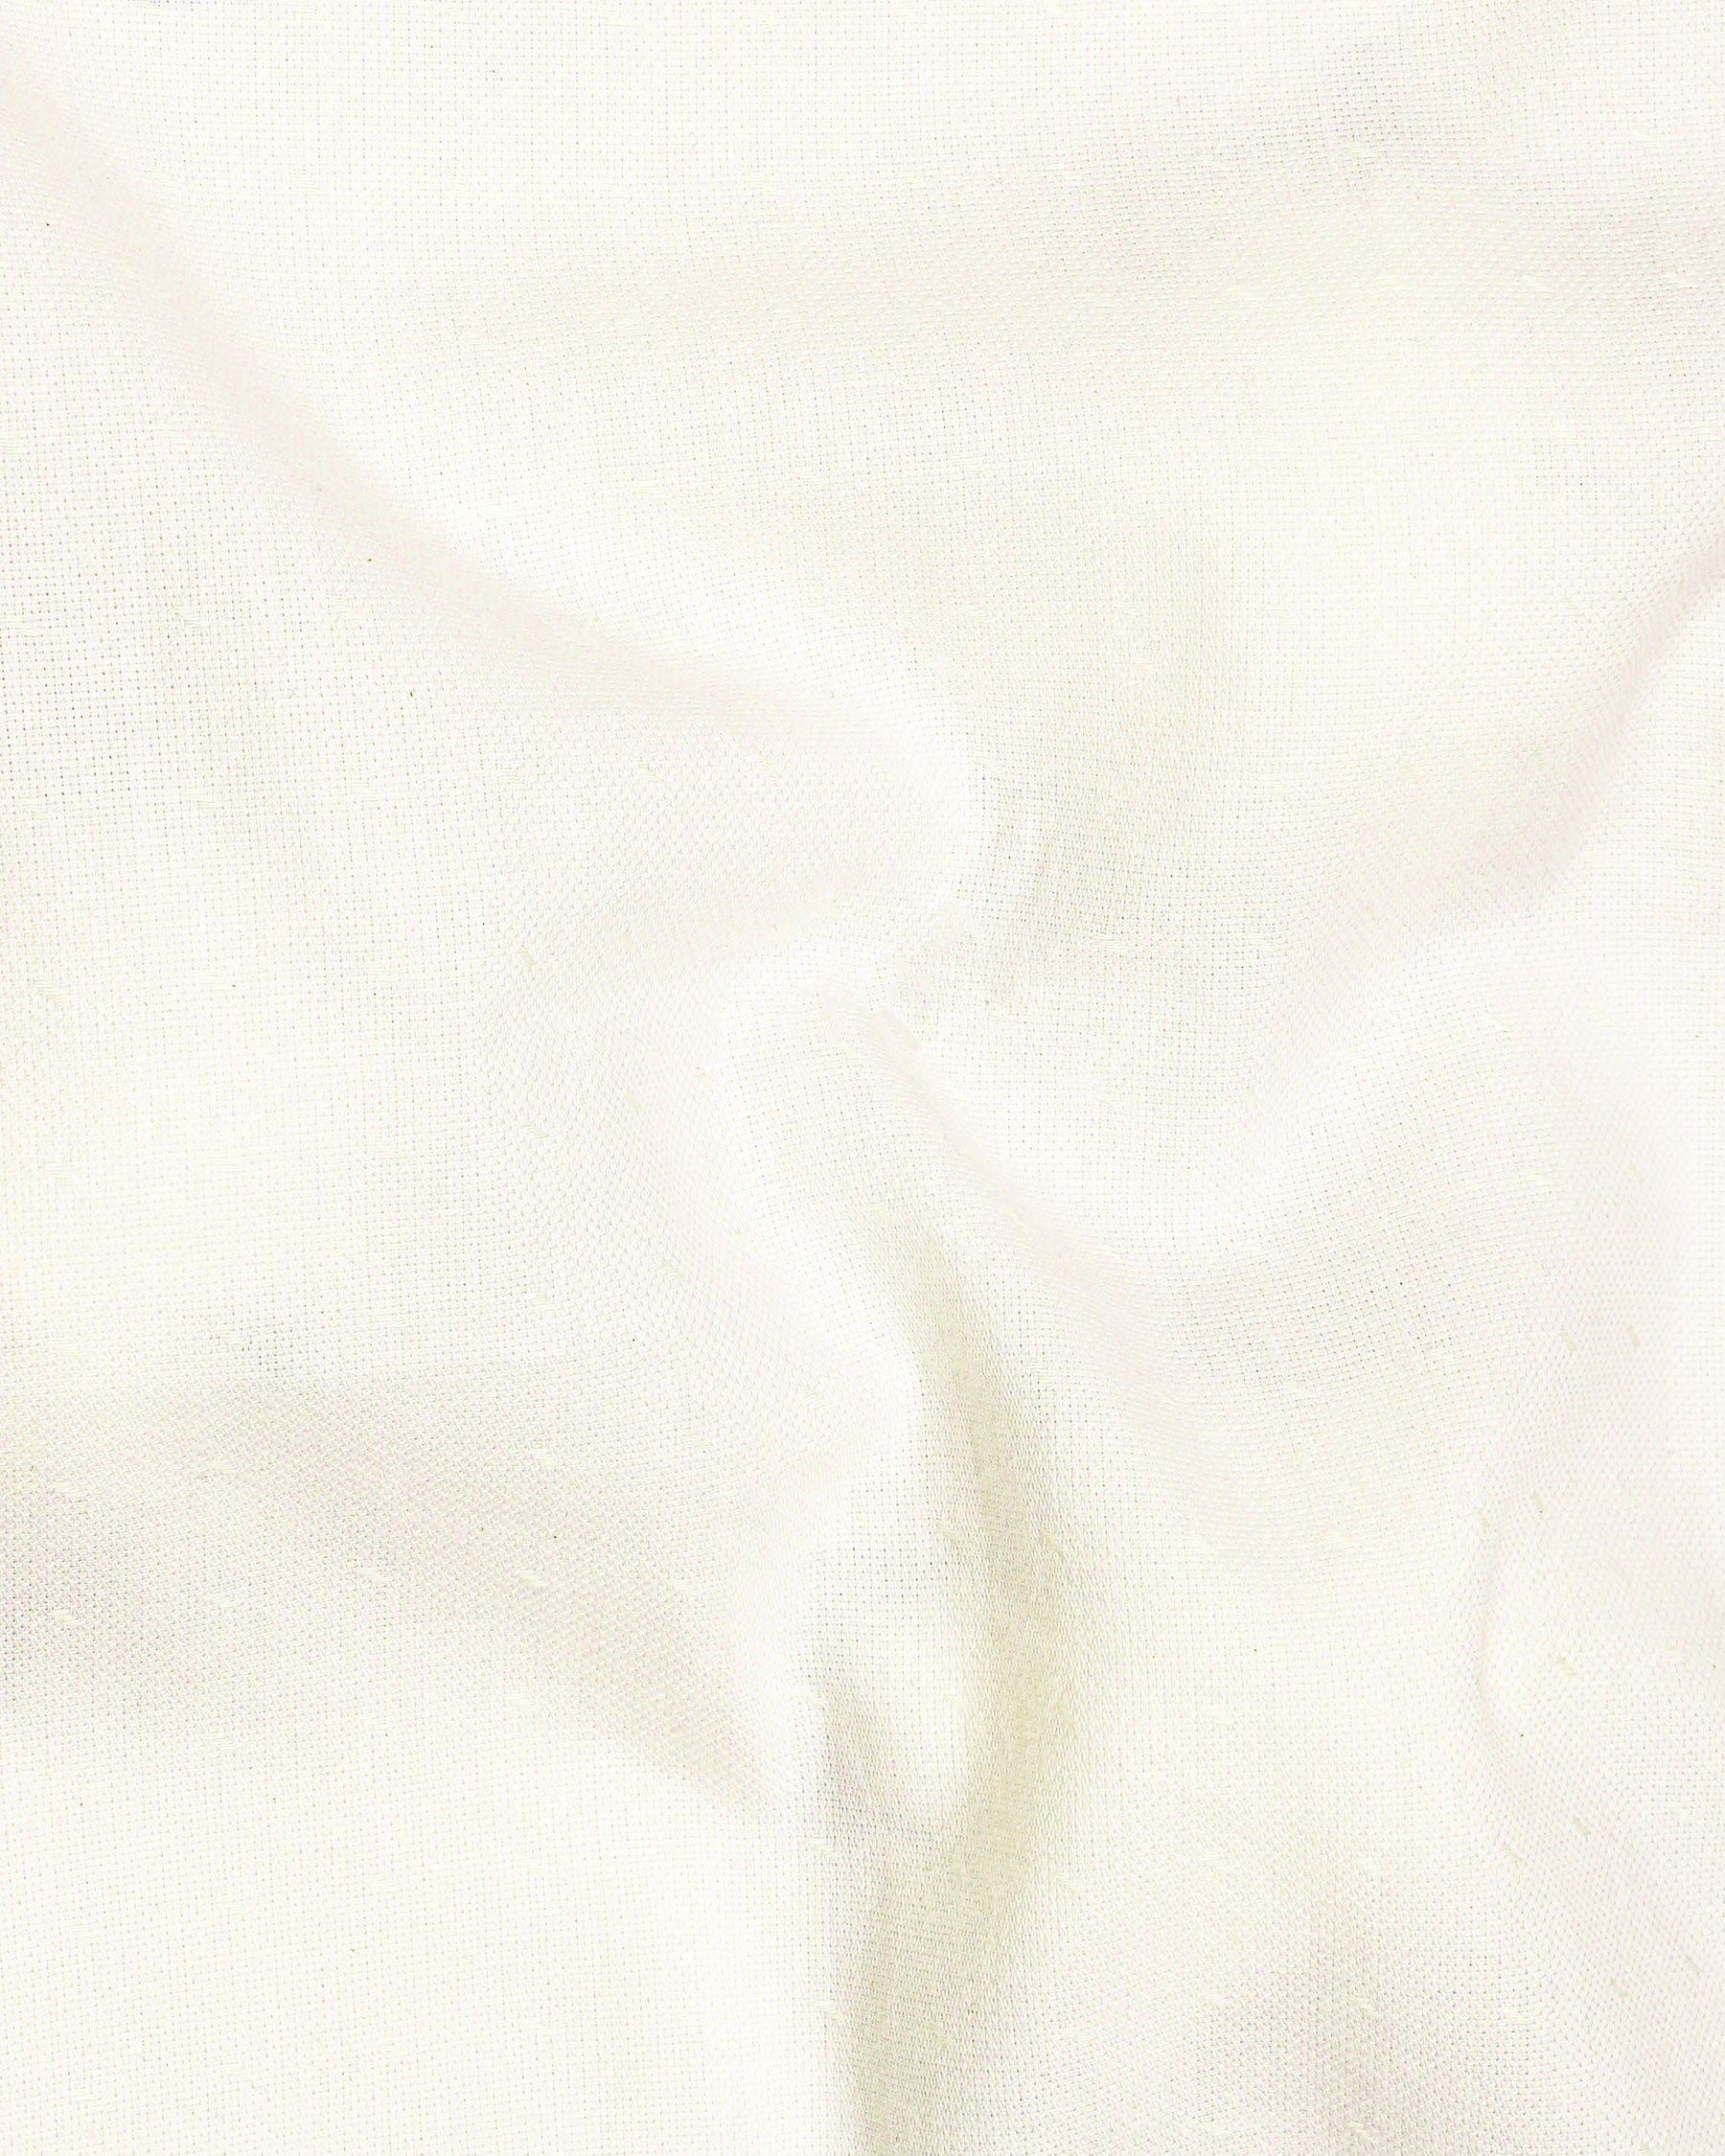 Merino Cream Dobby Textured Premium Giza Cotton Shirt 6787-38,6787-38,6787-39,6787-39,6787-40,6787-40,6787-42,6787-42,6787-44,6787-44,6787-46,6787-46,6787-48,6787-48,6787-50,6787-50,6787-52,6787-52